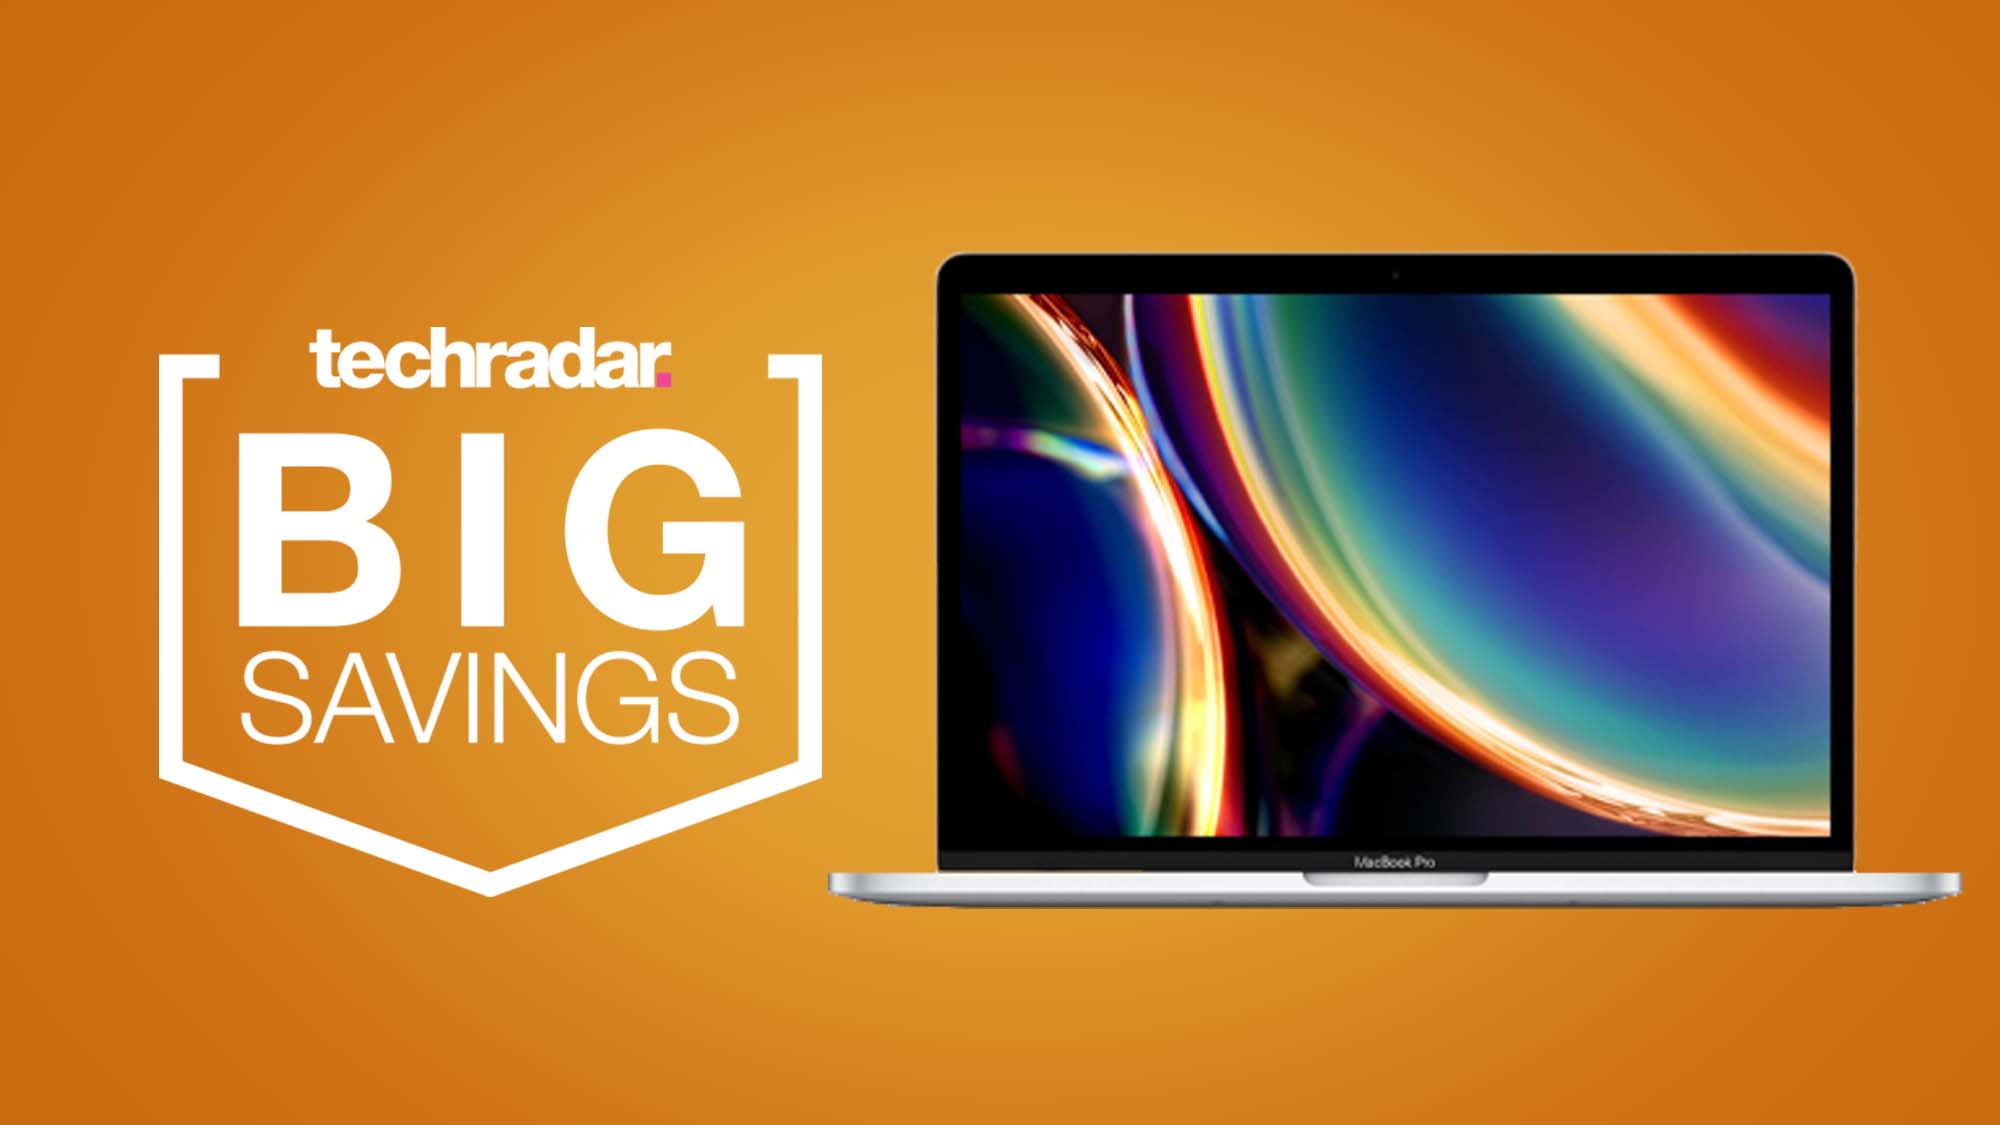 Apple MacBook Pro sobre un fondo naranja con la insignia TechRadar Big Savings